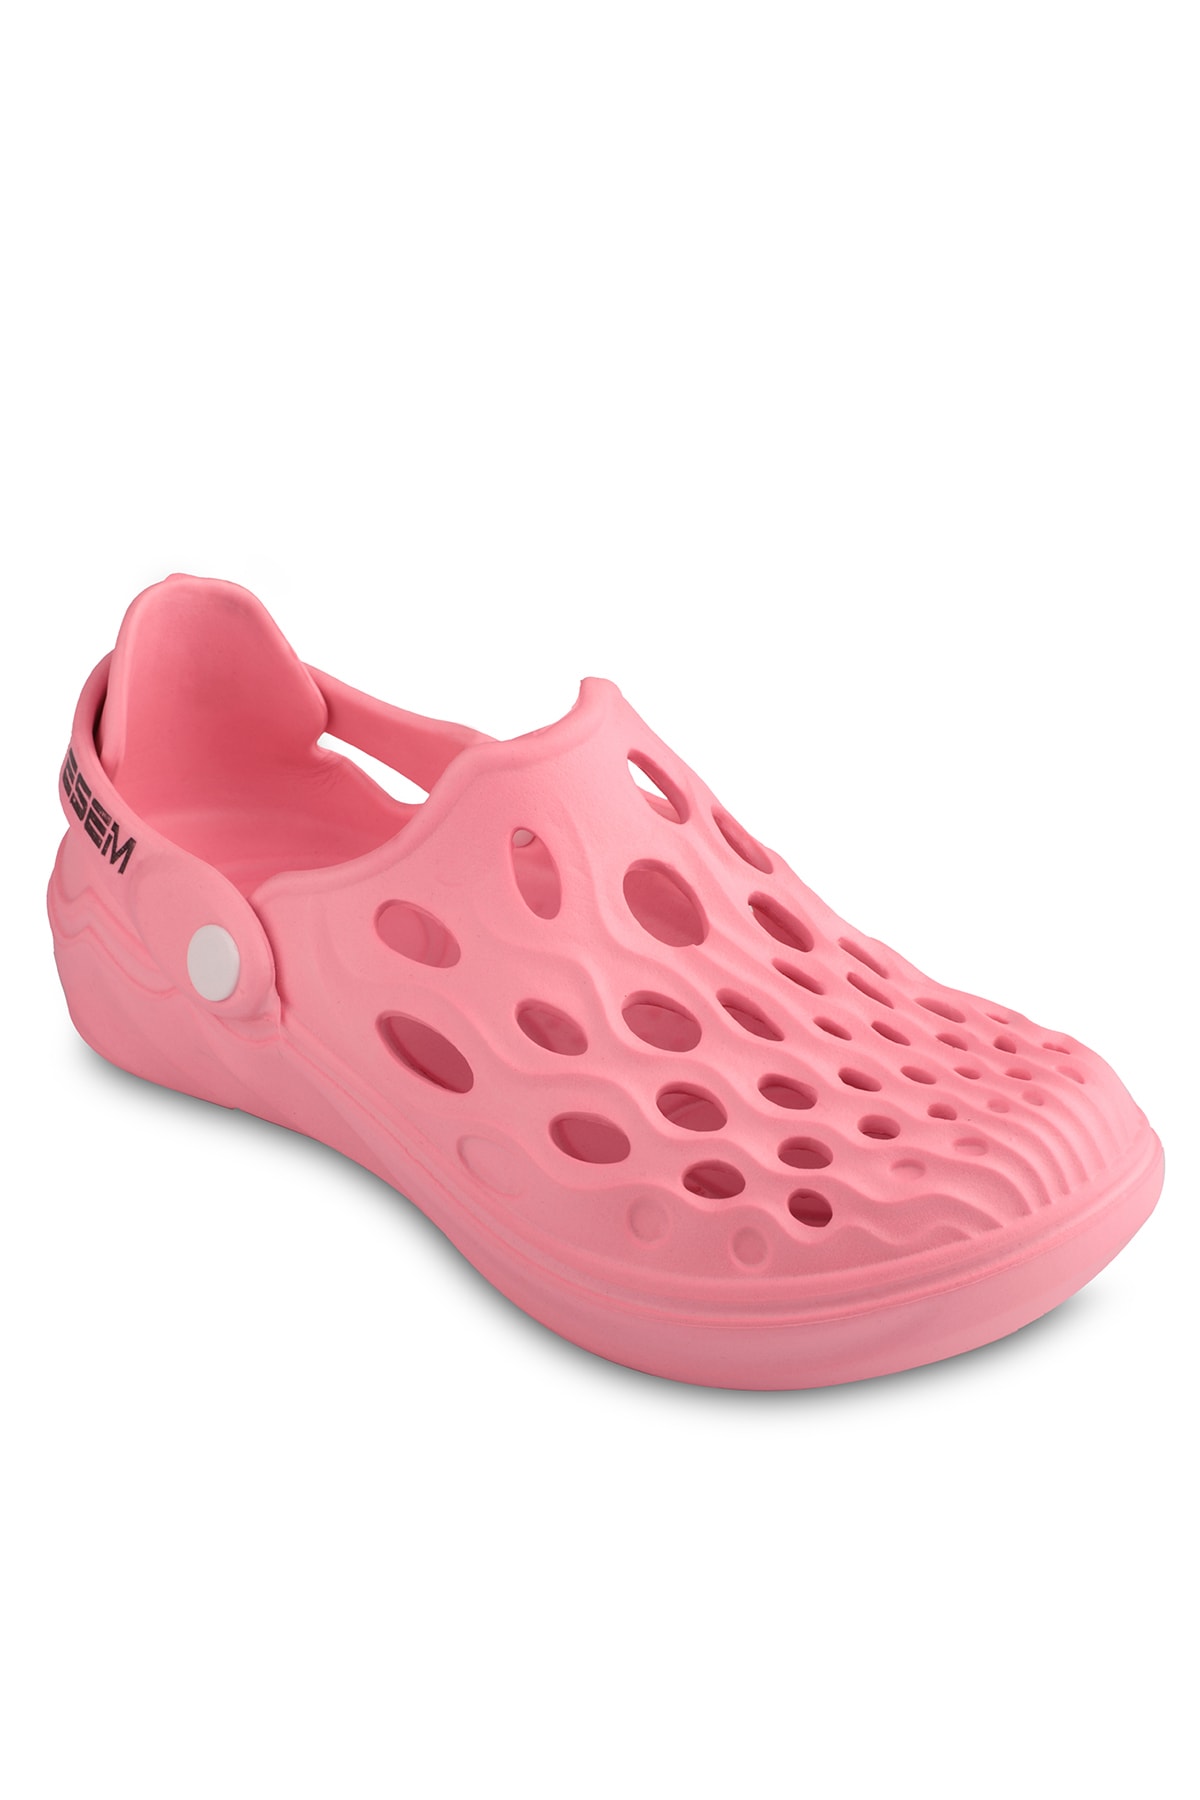 Levně Esem E279.z.000 Women's Pink Slippers